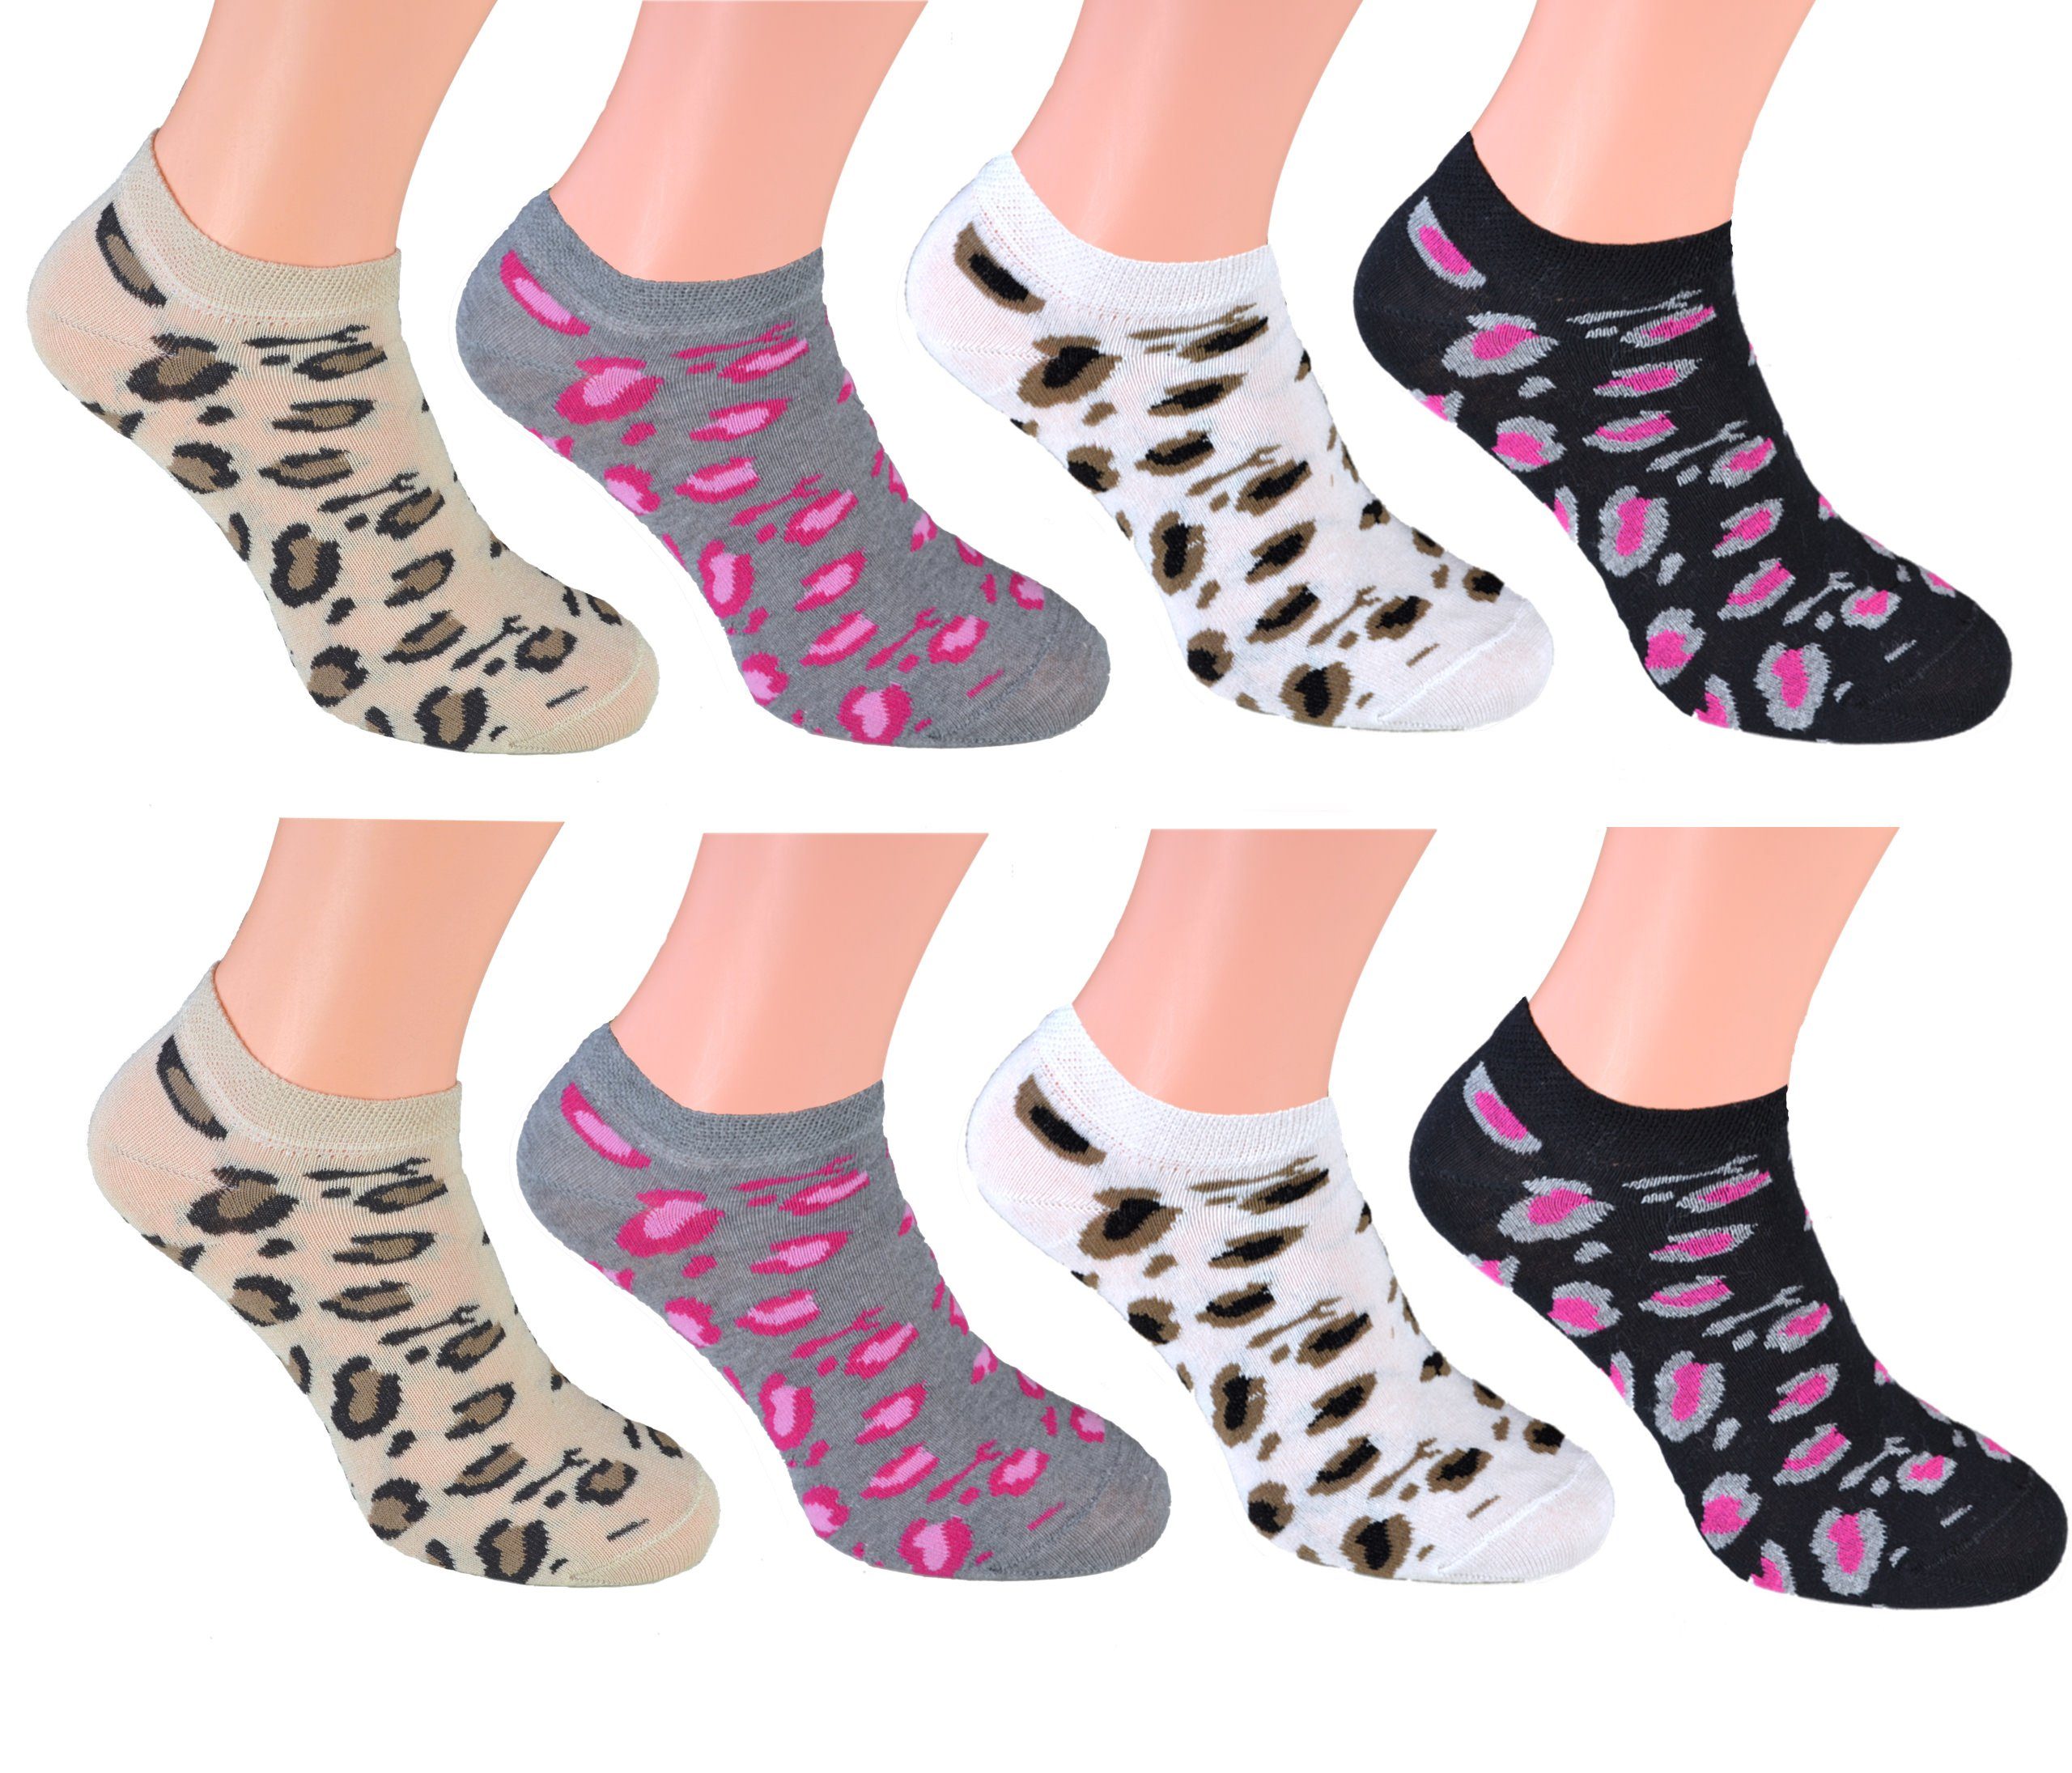 Cocain underwear Sneakersocken 8 Paar Sneaker Socken Marke Füsslinge Söckchen für Damen Baumwolle (8-Paar) verschiedene Modelle Leopard